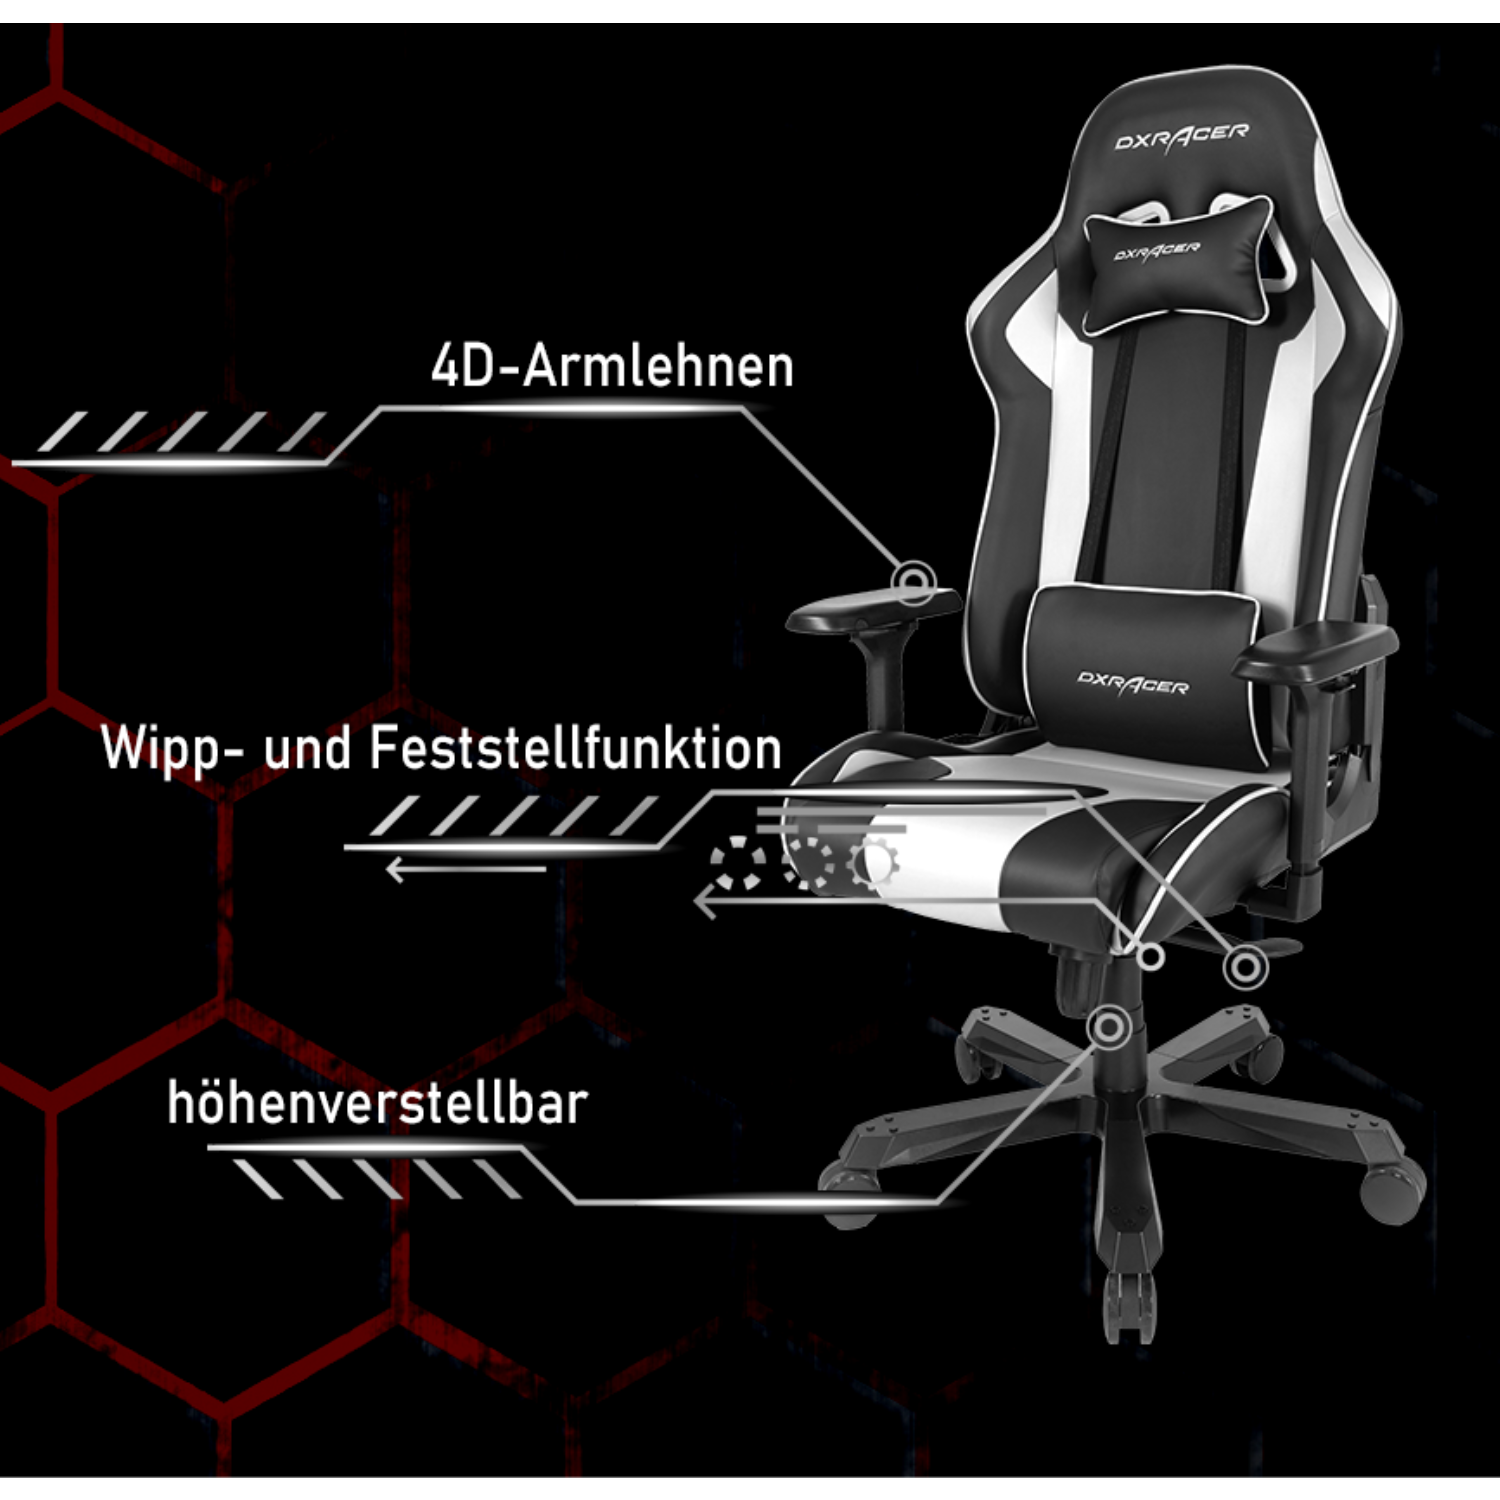 DXRACER Schwarz K-Series Chair, Gaming